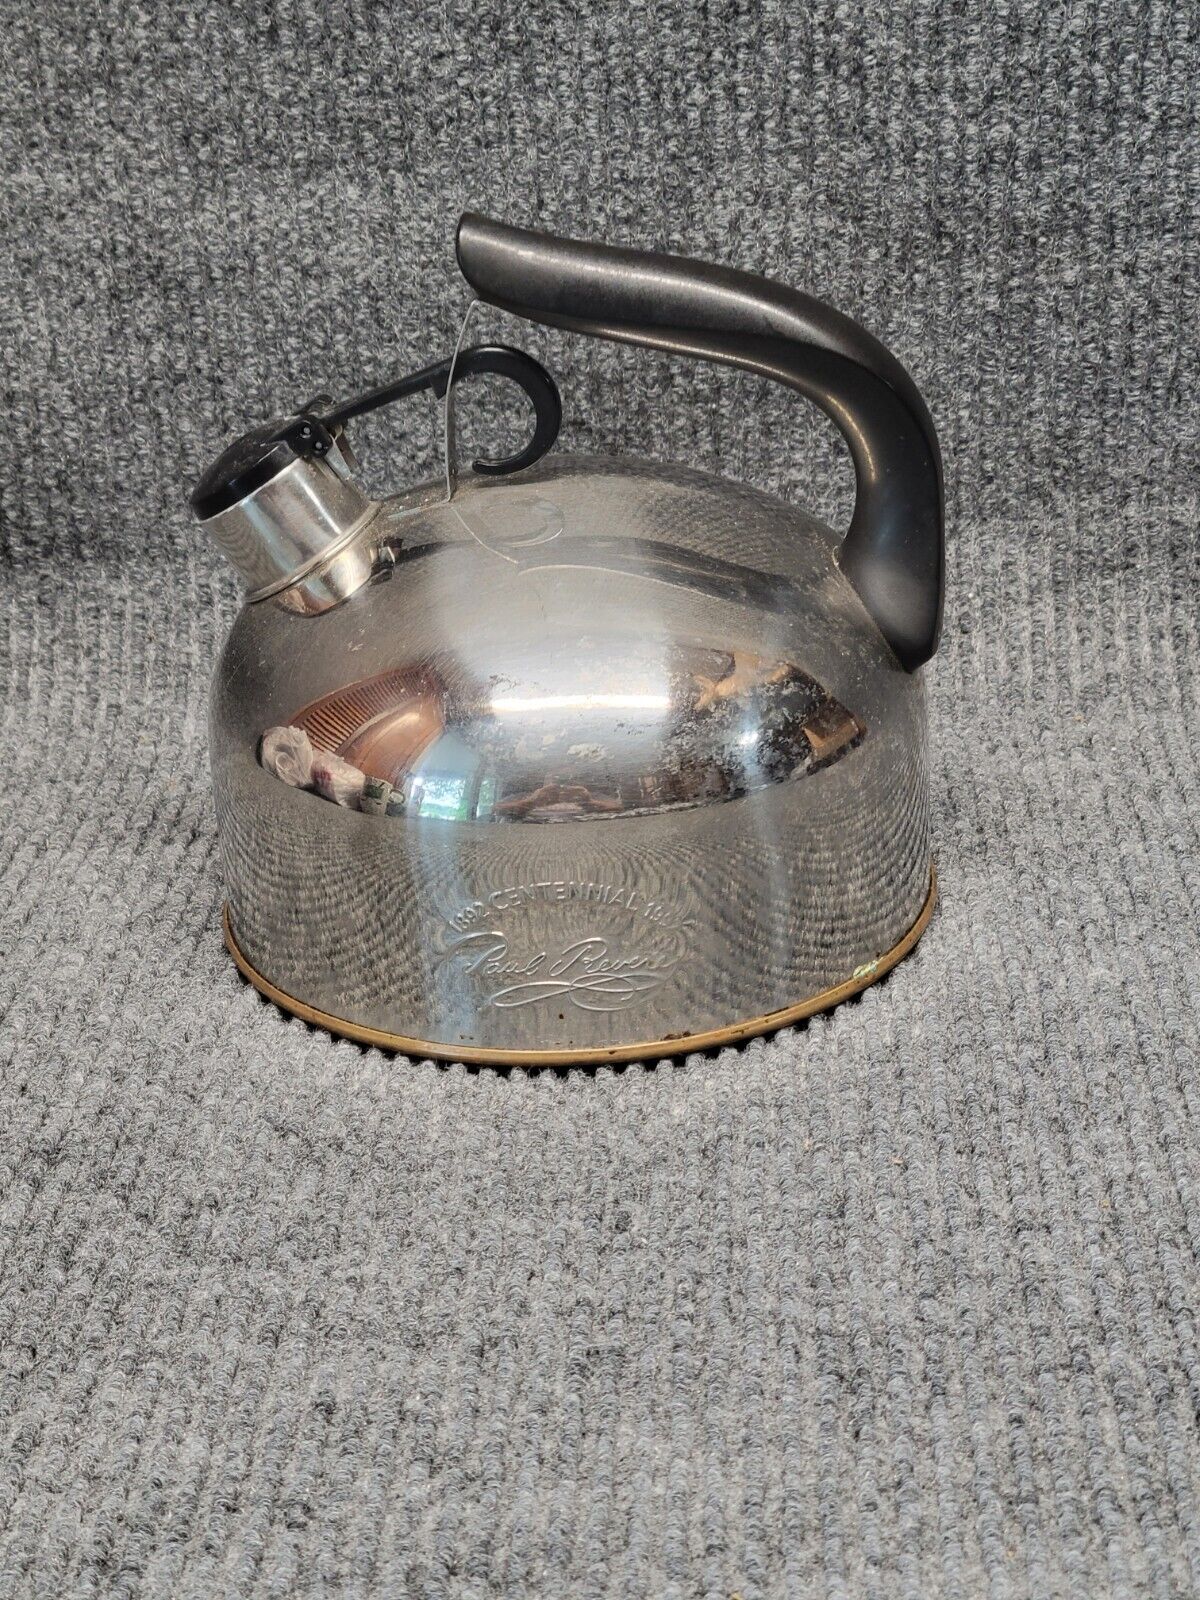 Paul Revere Copper Bottom Tea Kettle Centennial 1892 - 1992